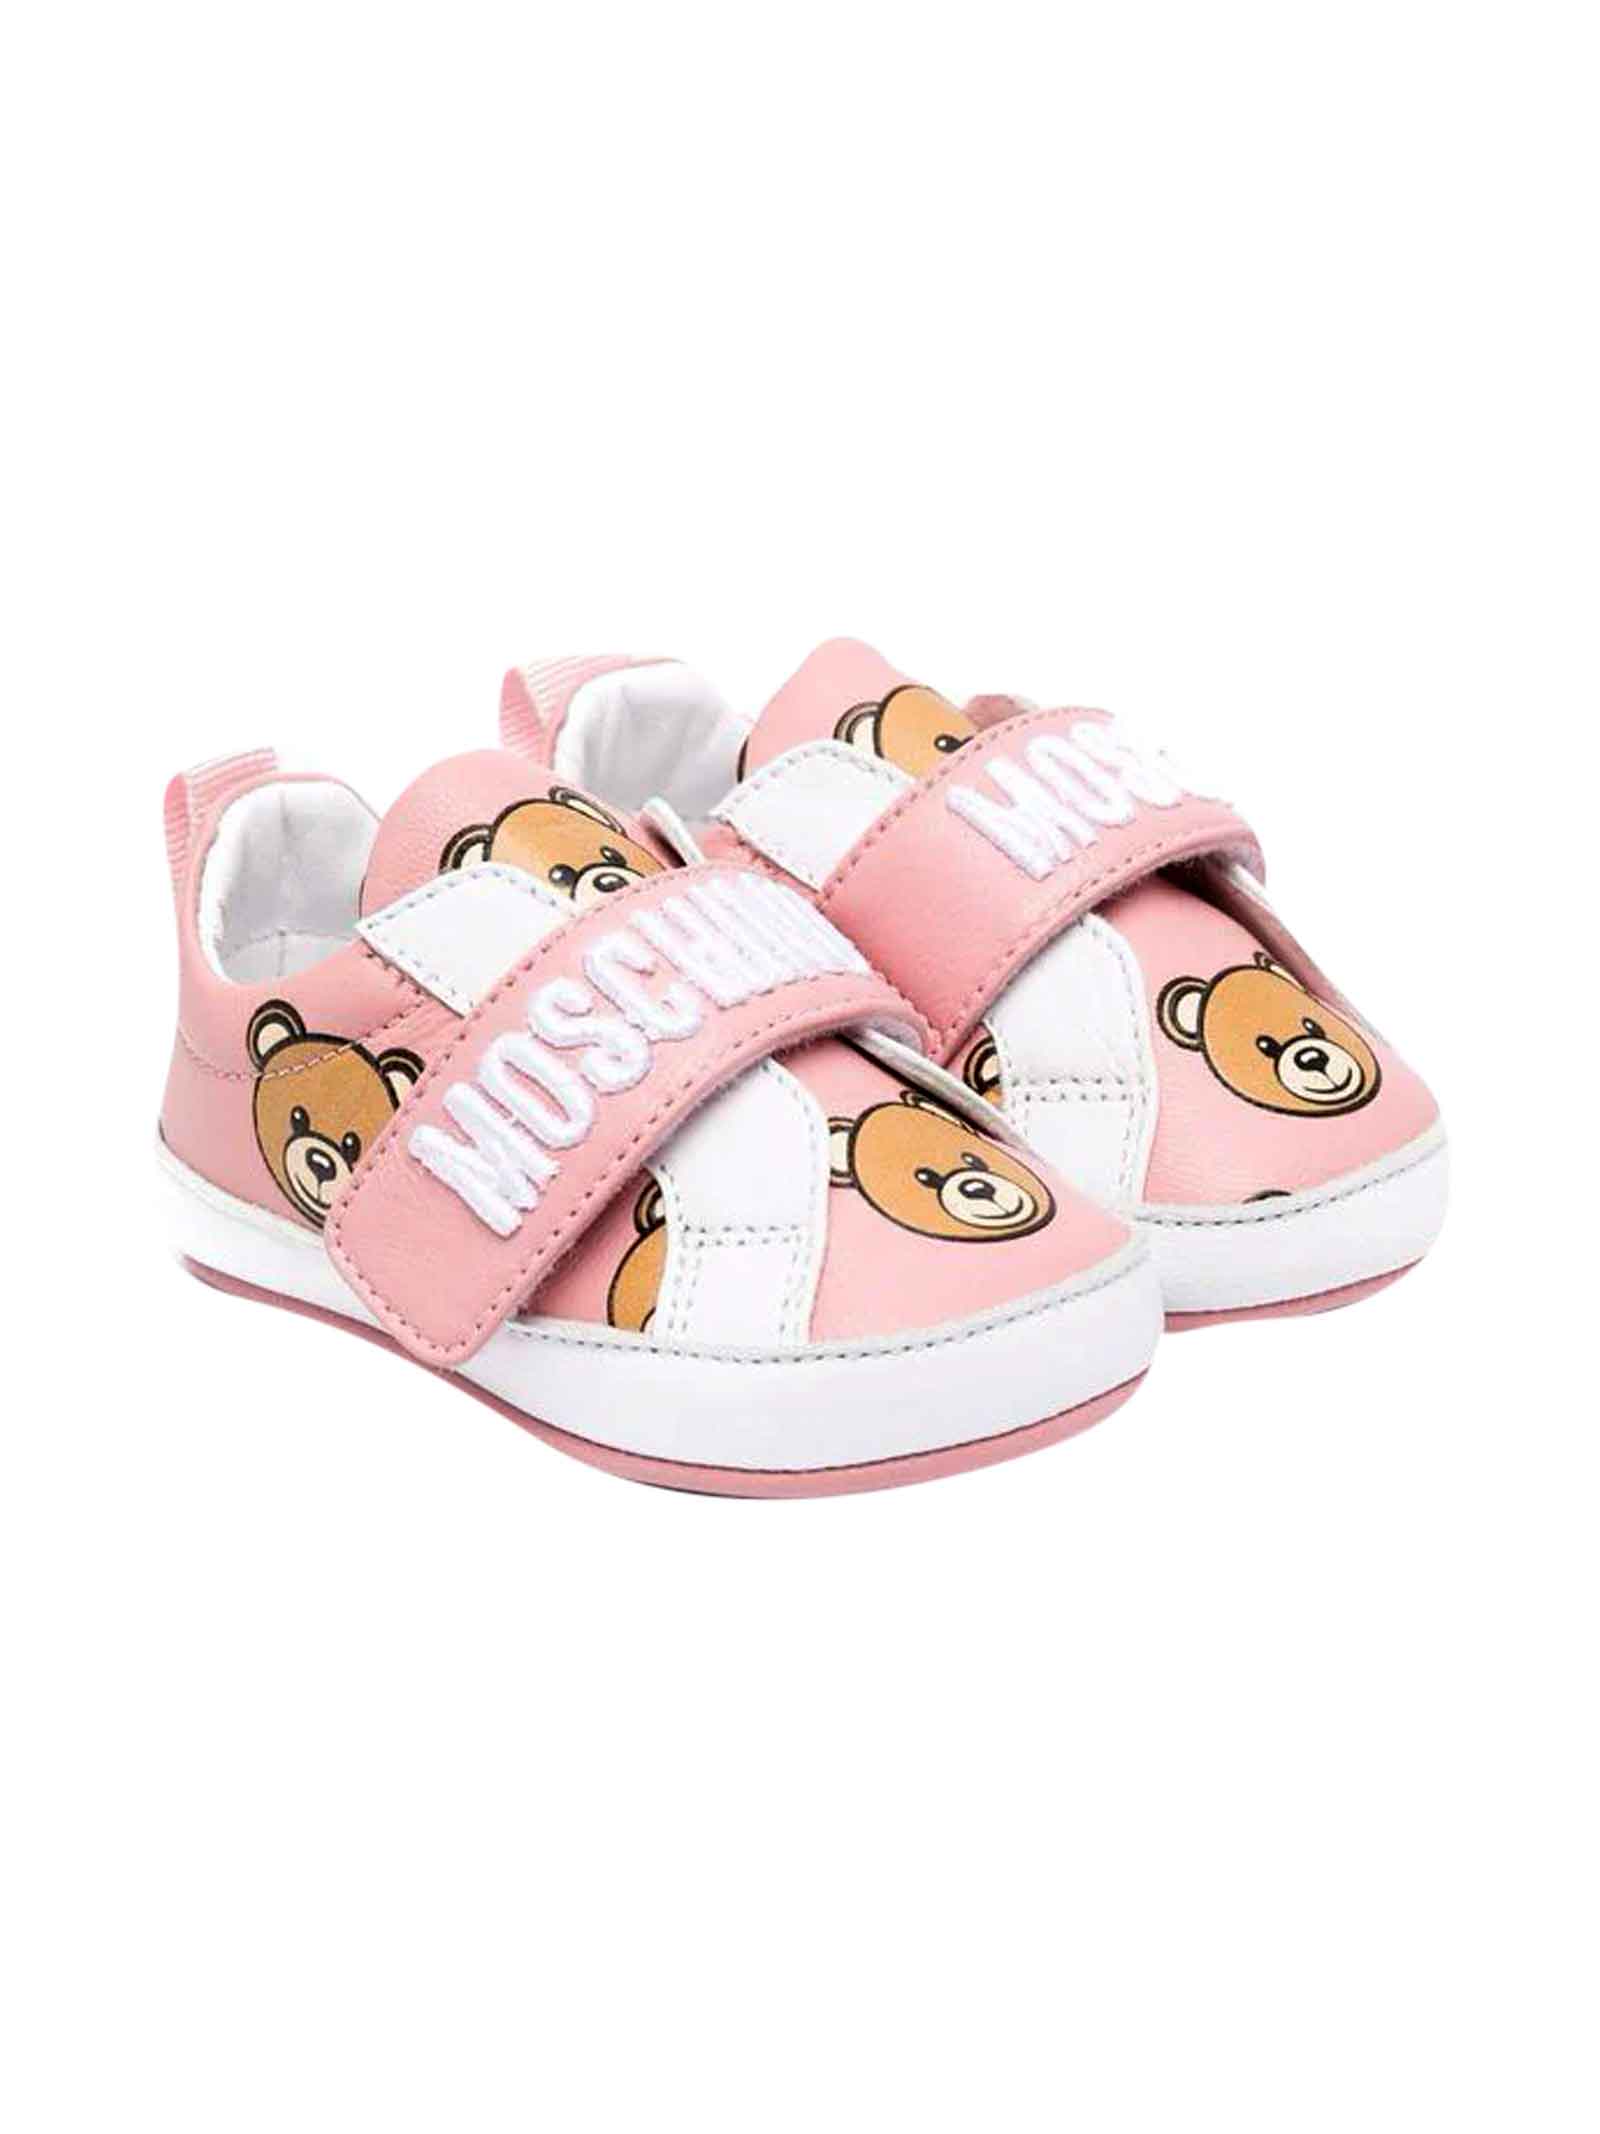 Moschino Newborn Pink Sneakers